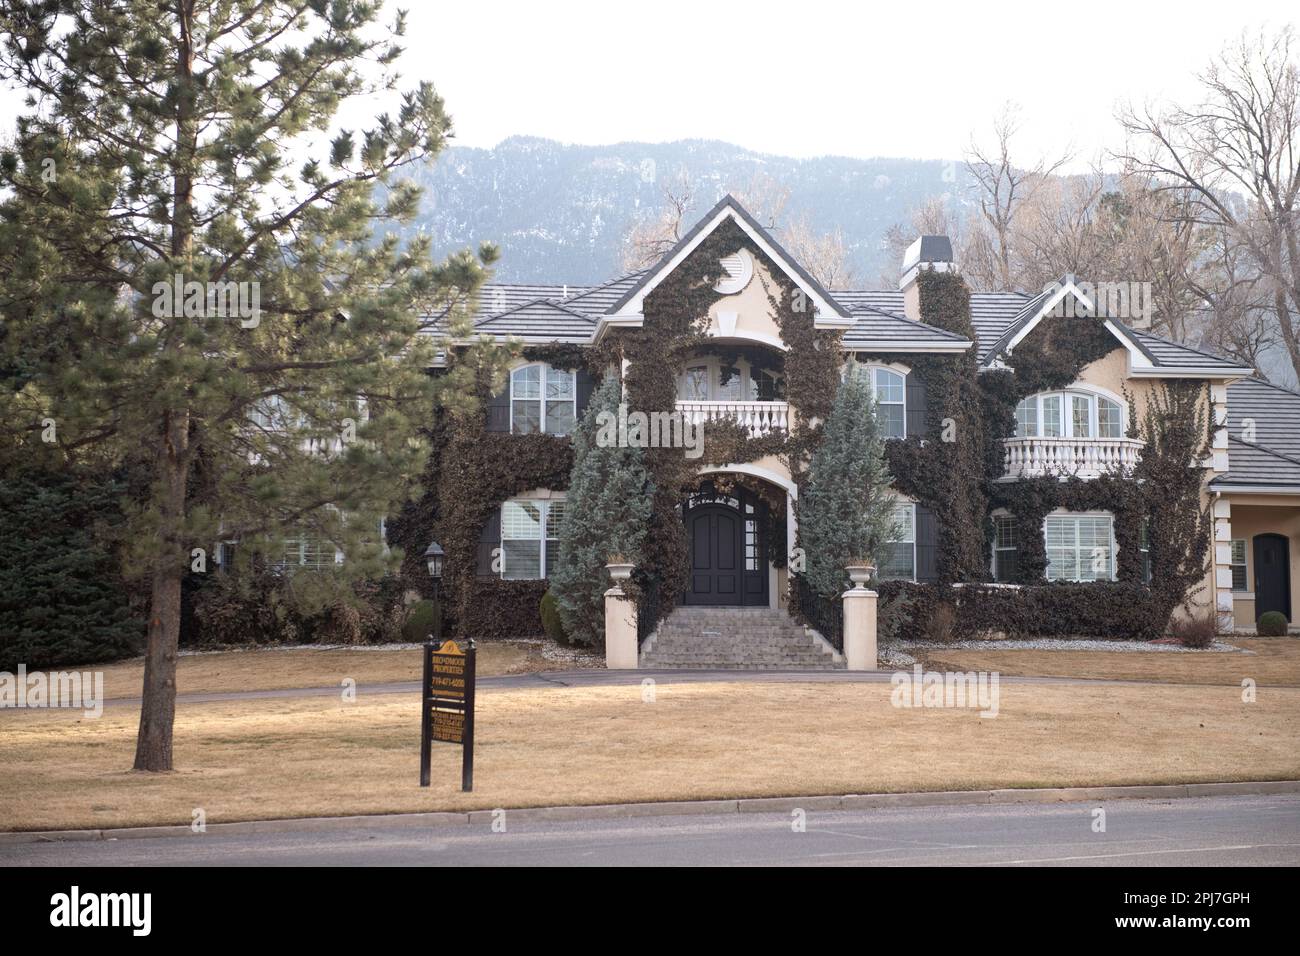 Großes exklusives Einfamilienhaus für $3,3 Millionen Dollar in der Nähe des Broadmoor Hotels. Exklusives Viertel in Colorado Springs, Colorado Stockfoto